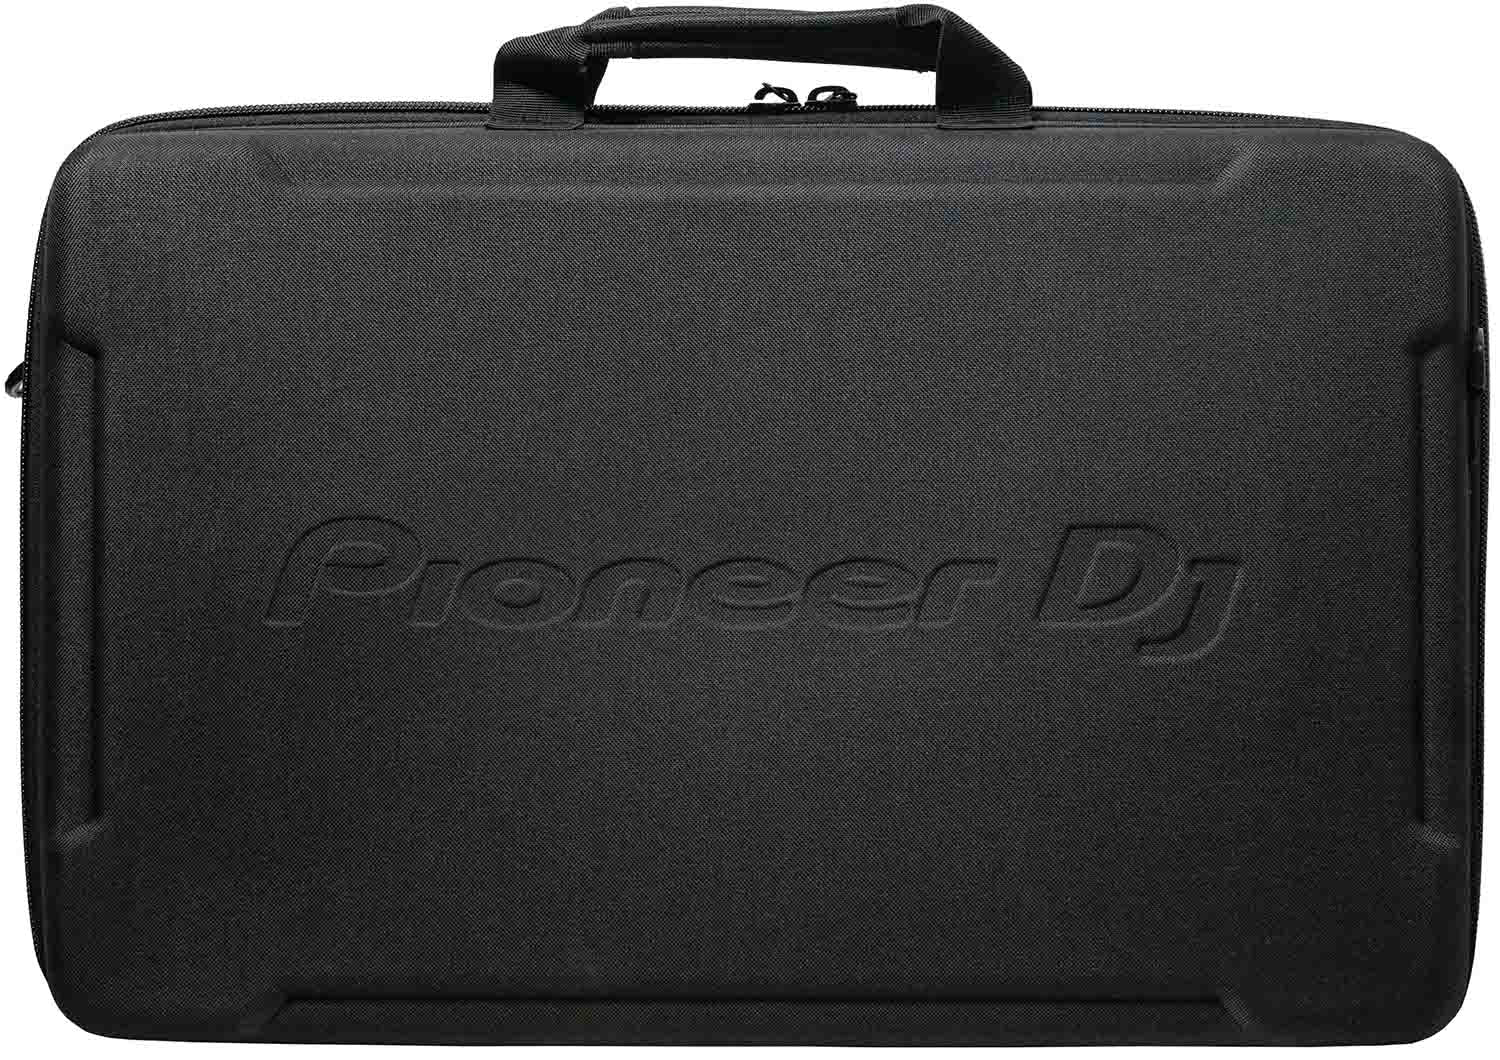 B-Stock Scratch & Dent: Pioneer DJ DJC-B1 DJ Controller Bag for DDJ-FLX4 , DDJ-400 and DDJ-SB3 Pioneer DJ